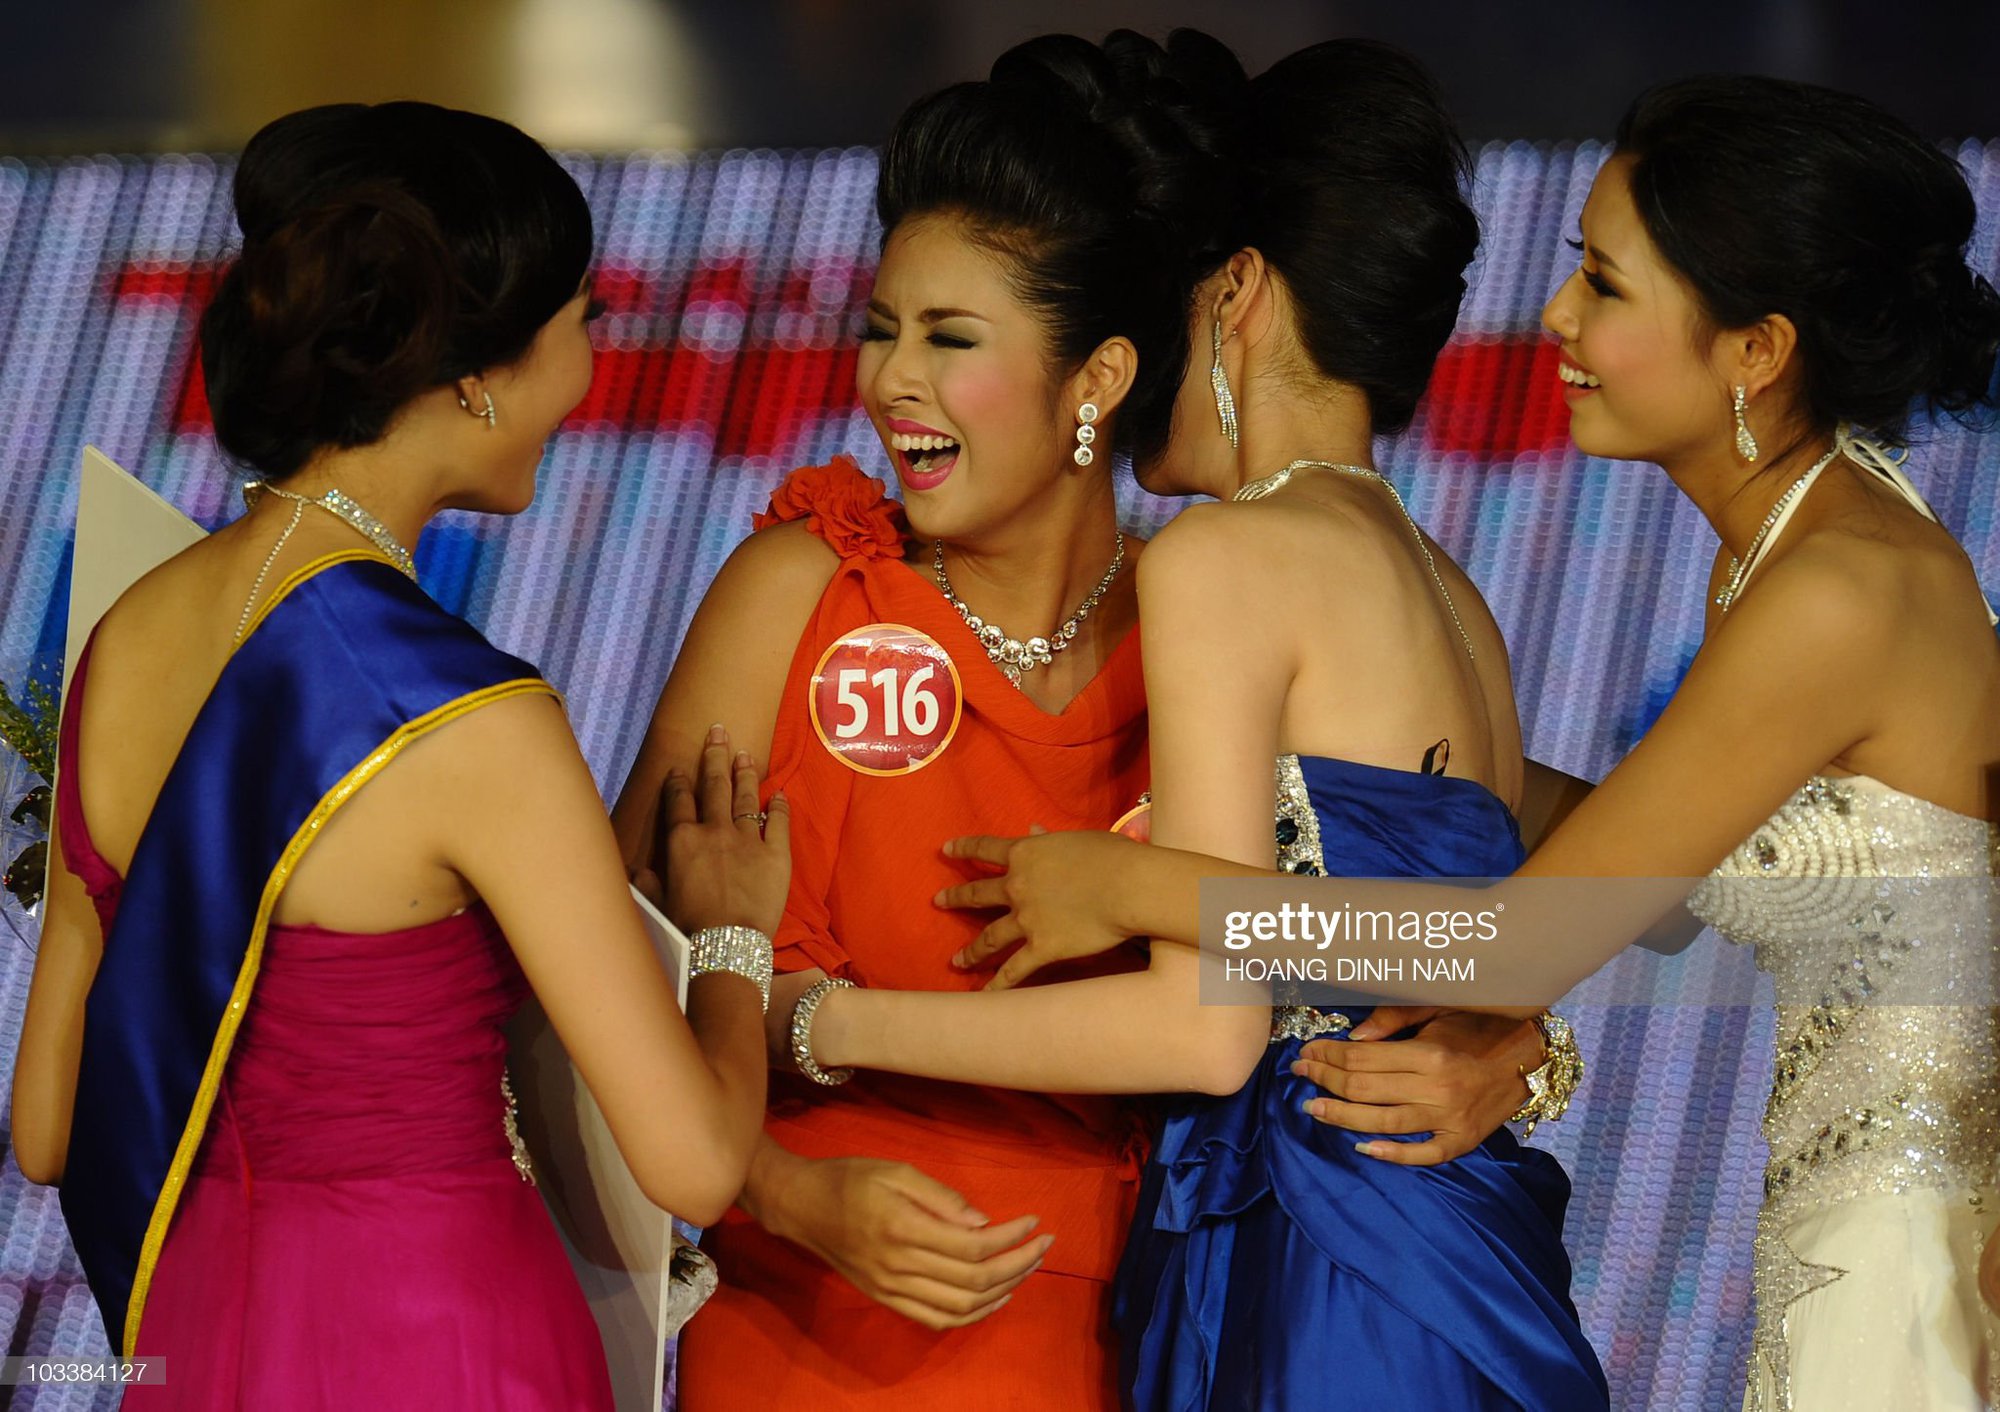 Sao Việt qua ống kính Getty Images: Hương Giang xinh như công chúa, Lý Nhã Kỳ da nâu lạ mắt, 2 cô Trinh đối lập nhau hoàn toàn - Ảnh 8.